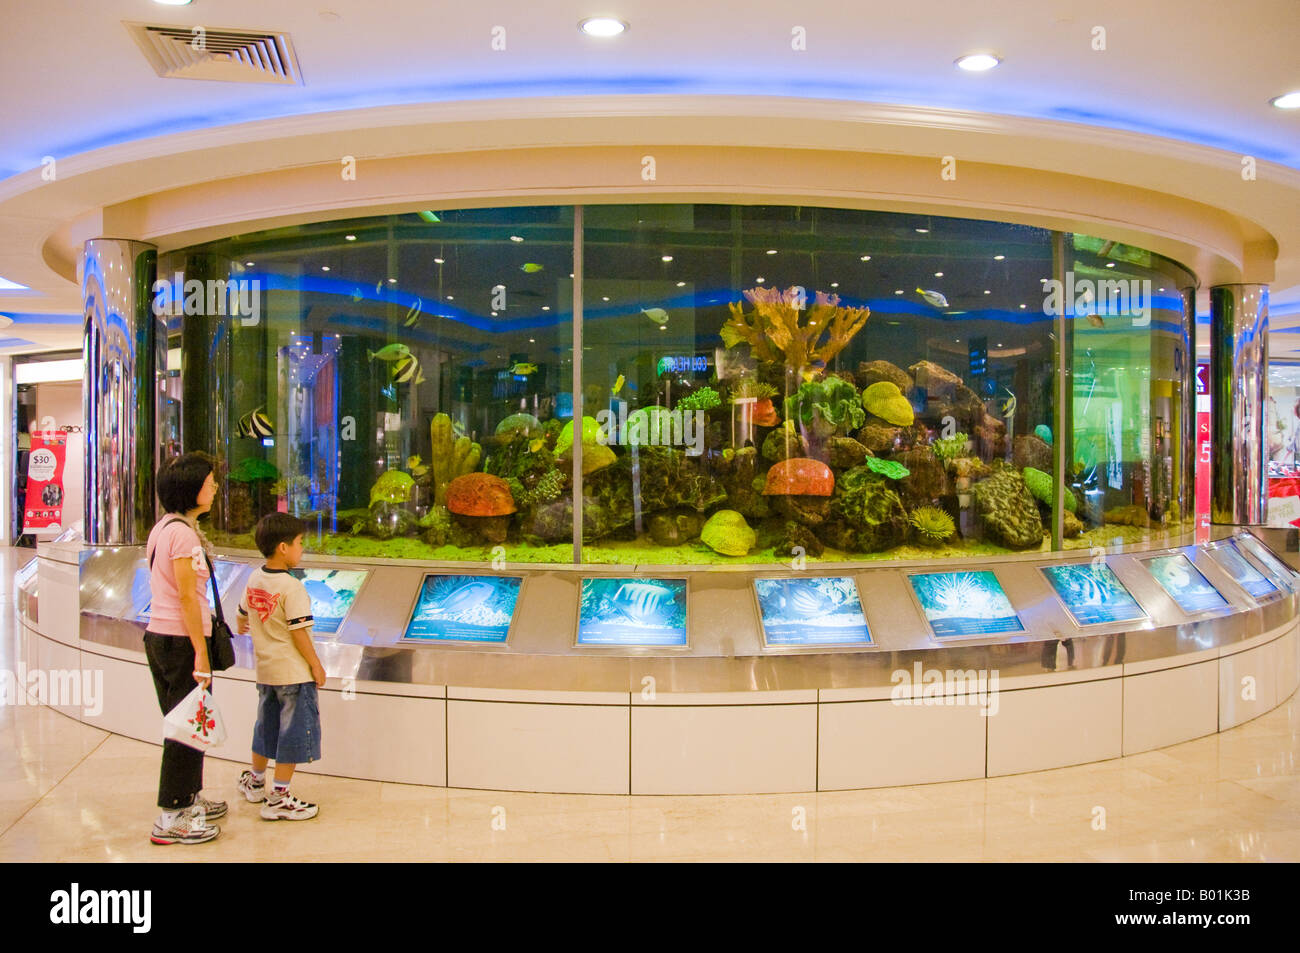 Circular Aquarium In Interior Of Shopping Mall In Singapore